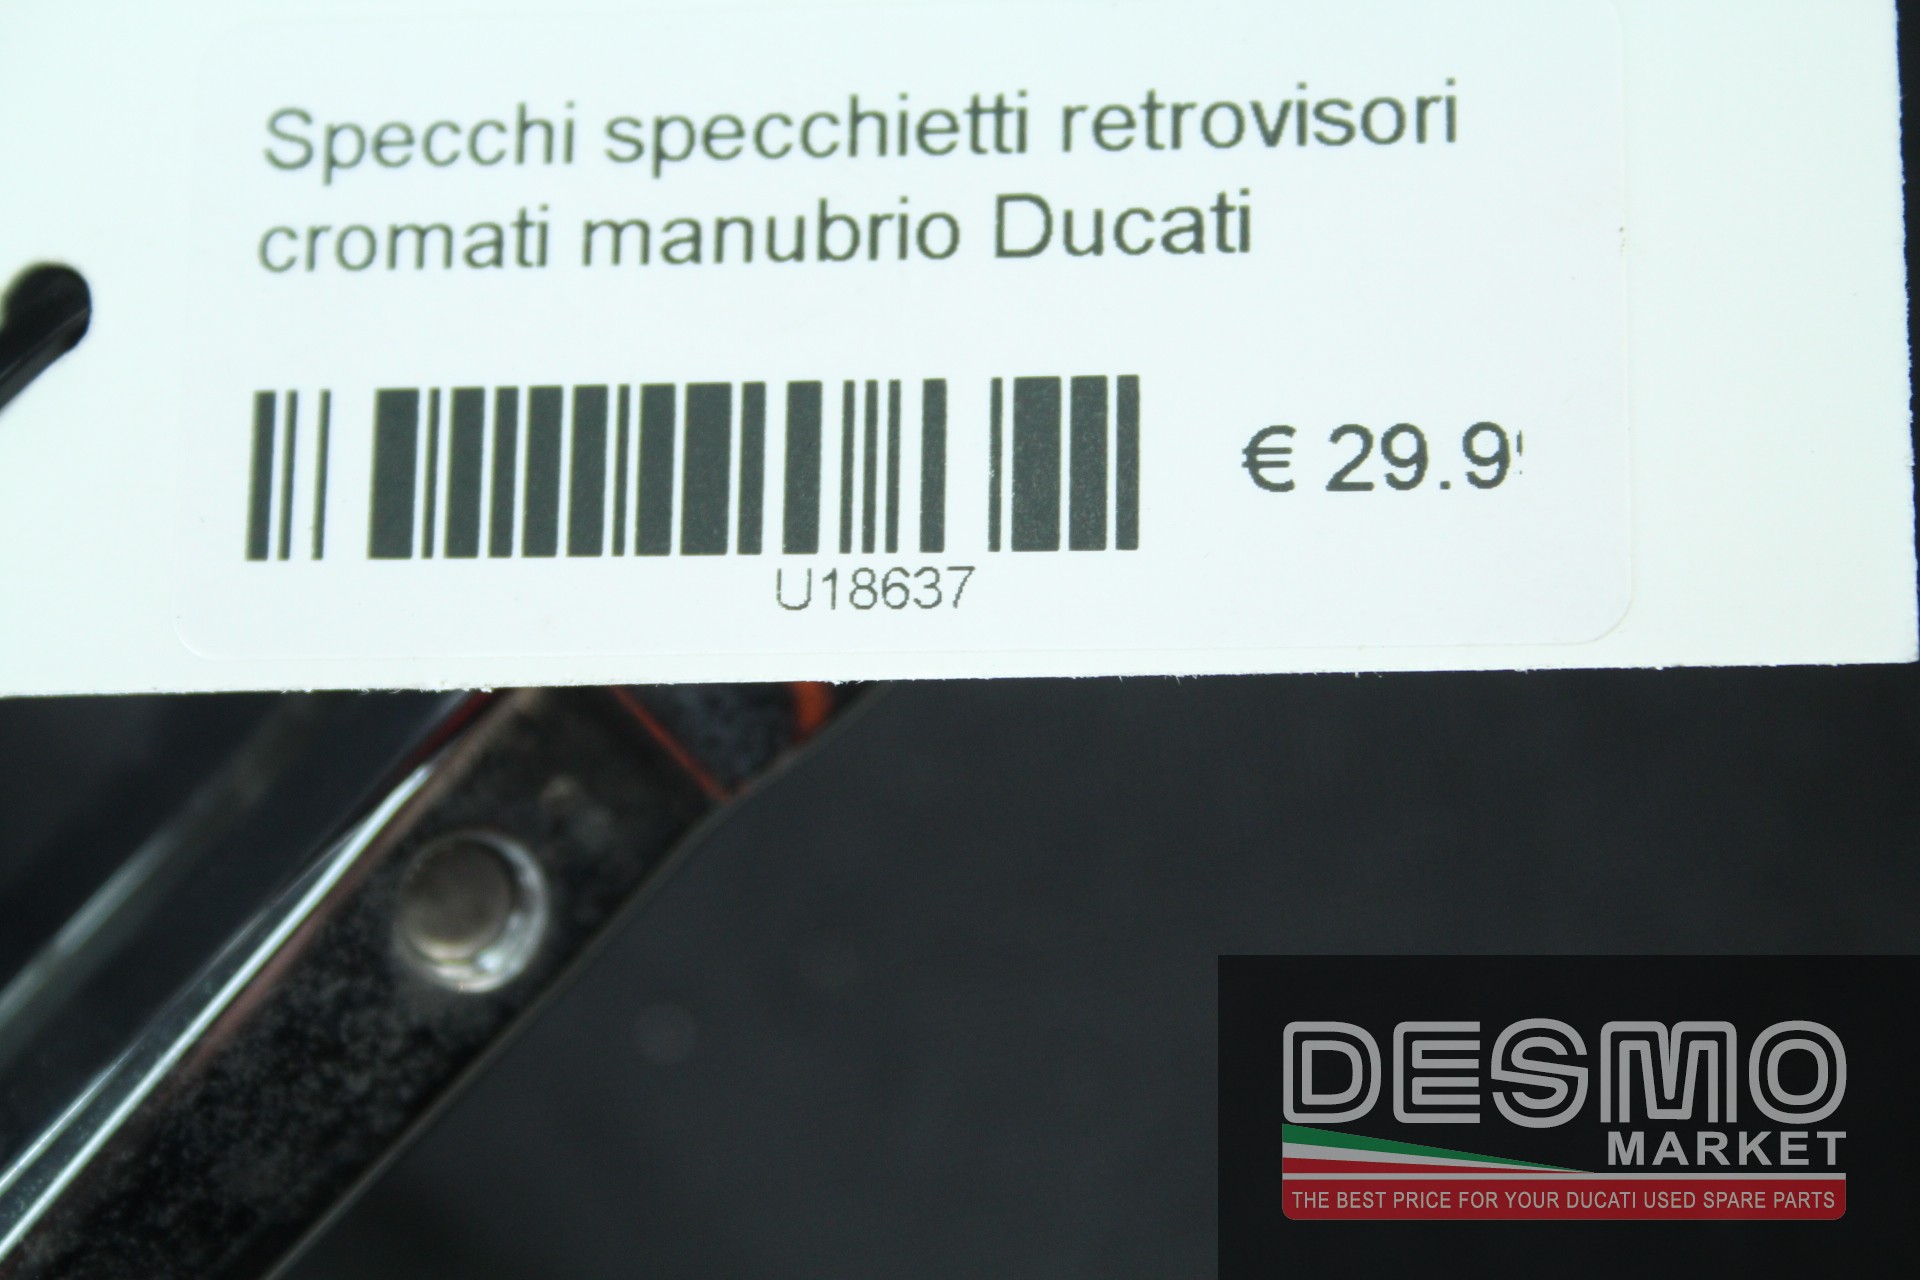 Specchi specchietti retrovisori cromati manubrio Ducati